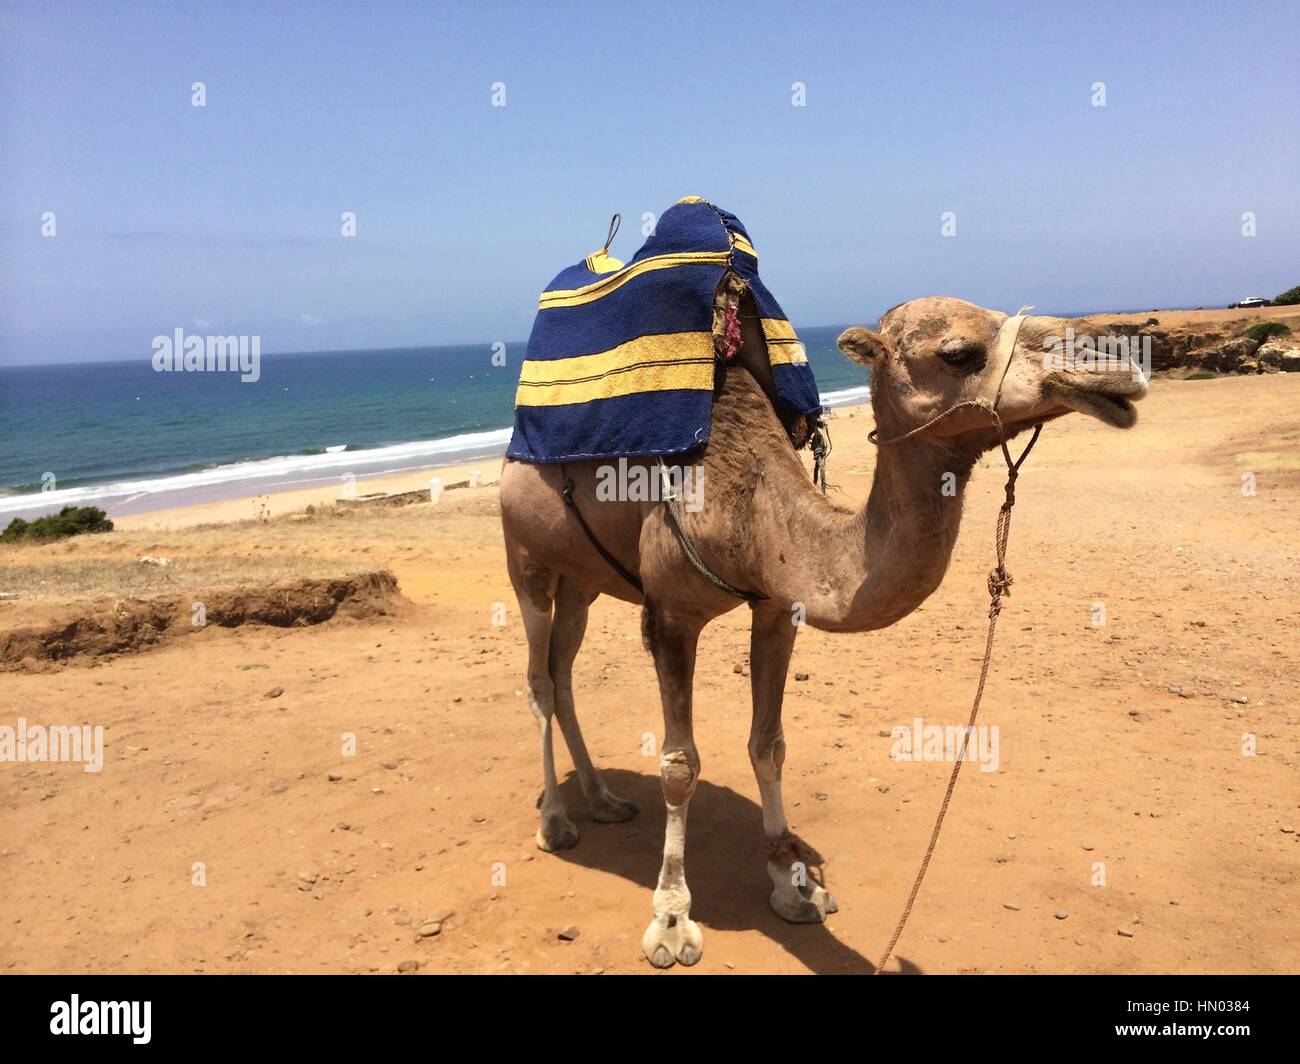 Cammello sulla spiaggia di sabbia sulla costa vicino a Tangeri, Marocco, Africa. Foto Stock